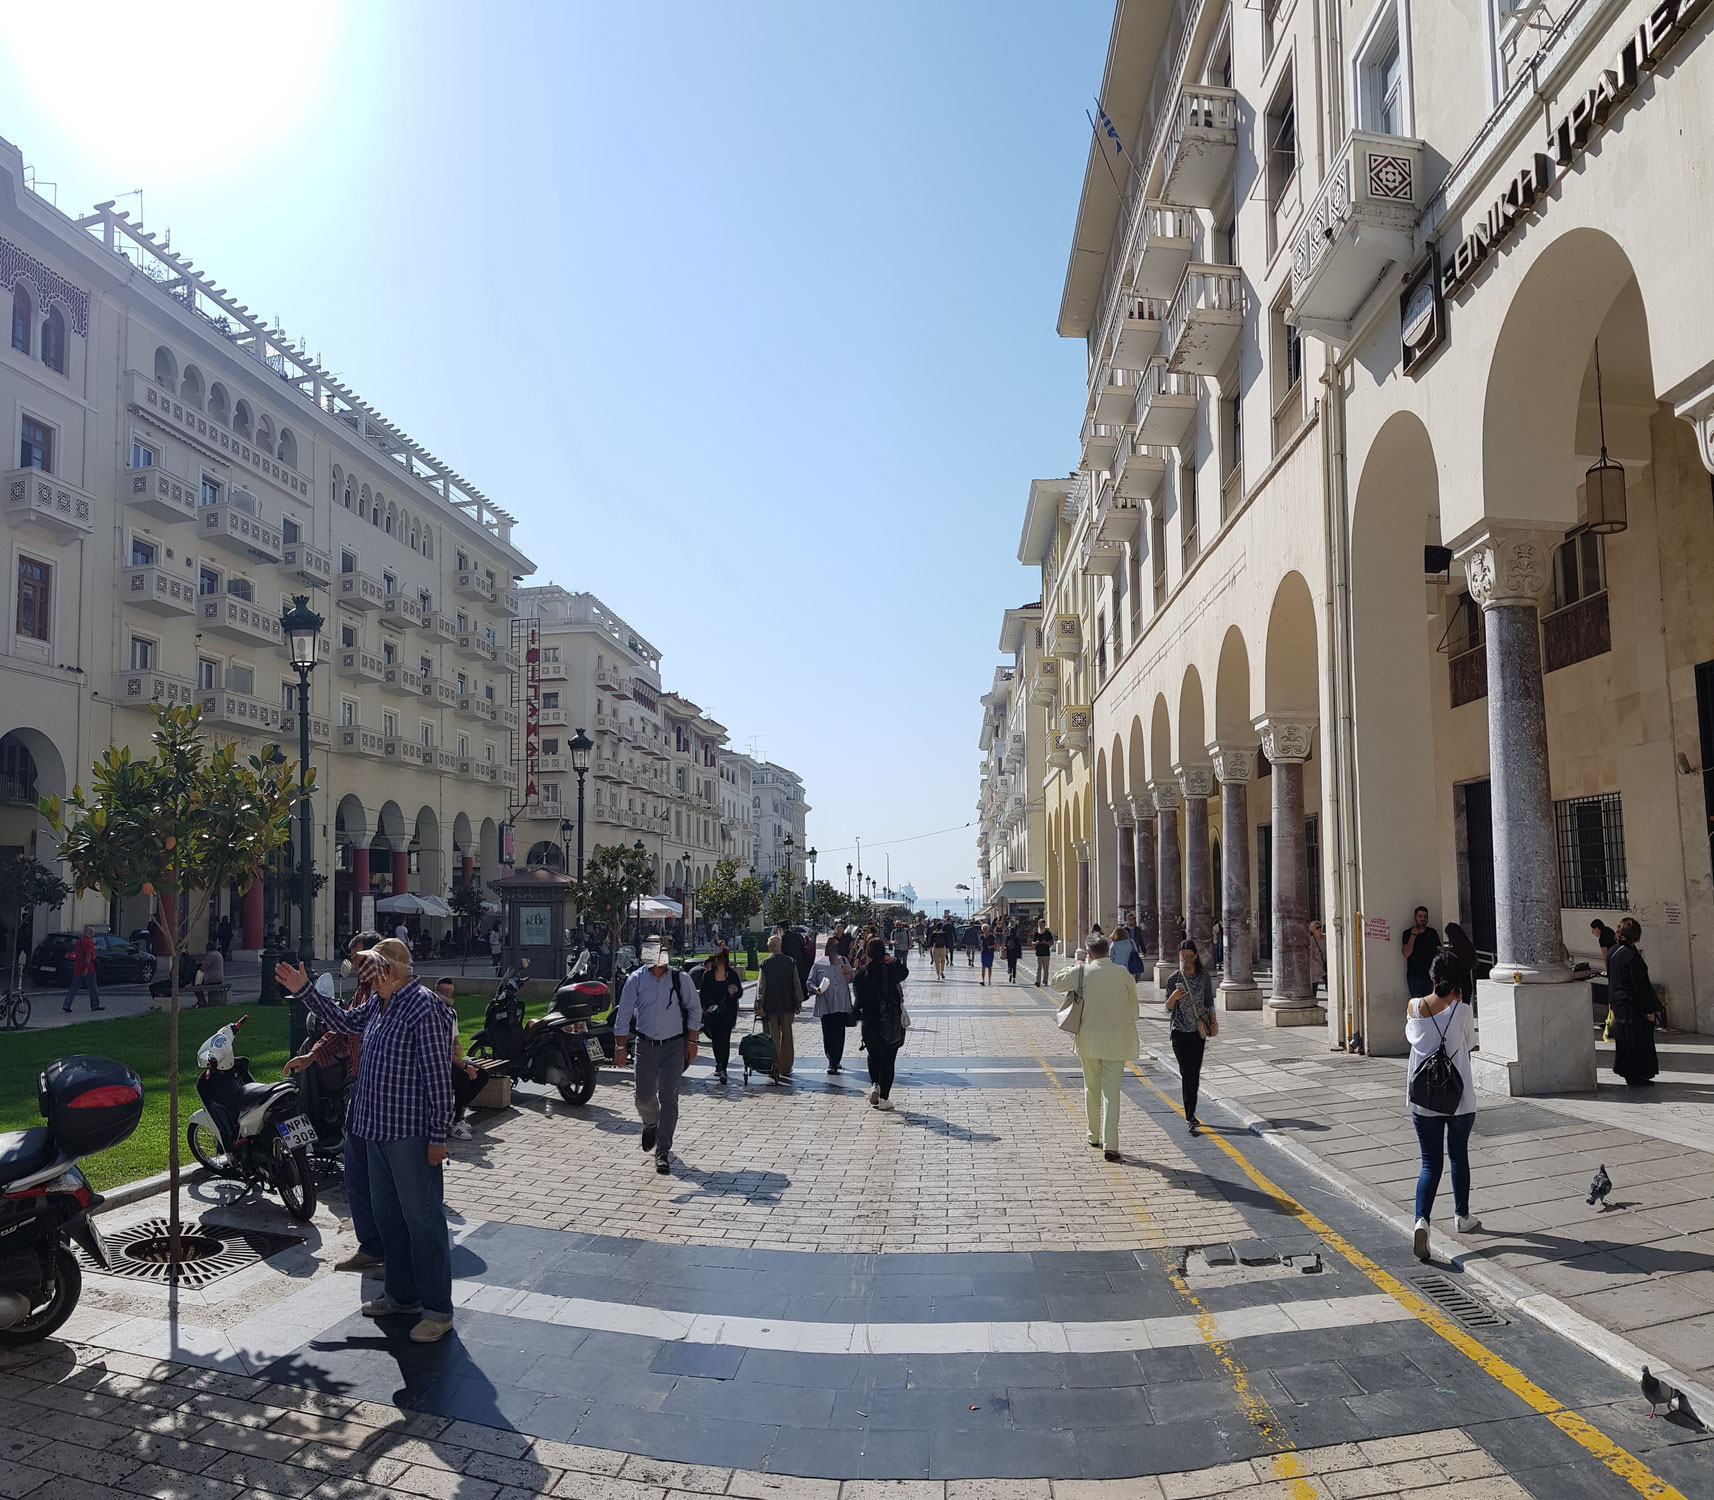 Thessaloniki-mal anders: Spaziergang durch Nebenstrassen und Fußgängerzonen